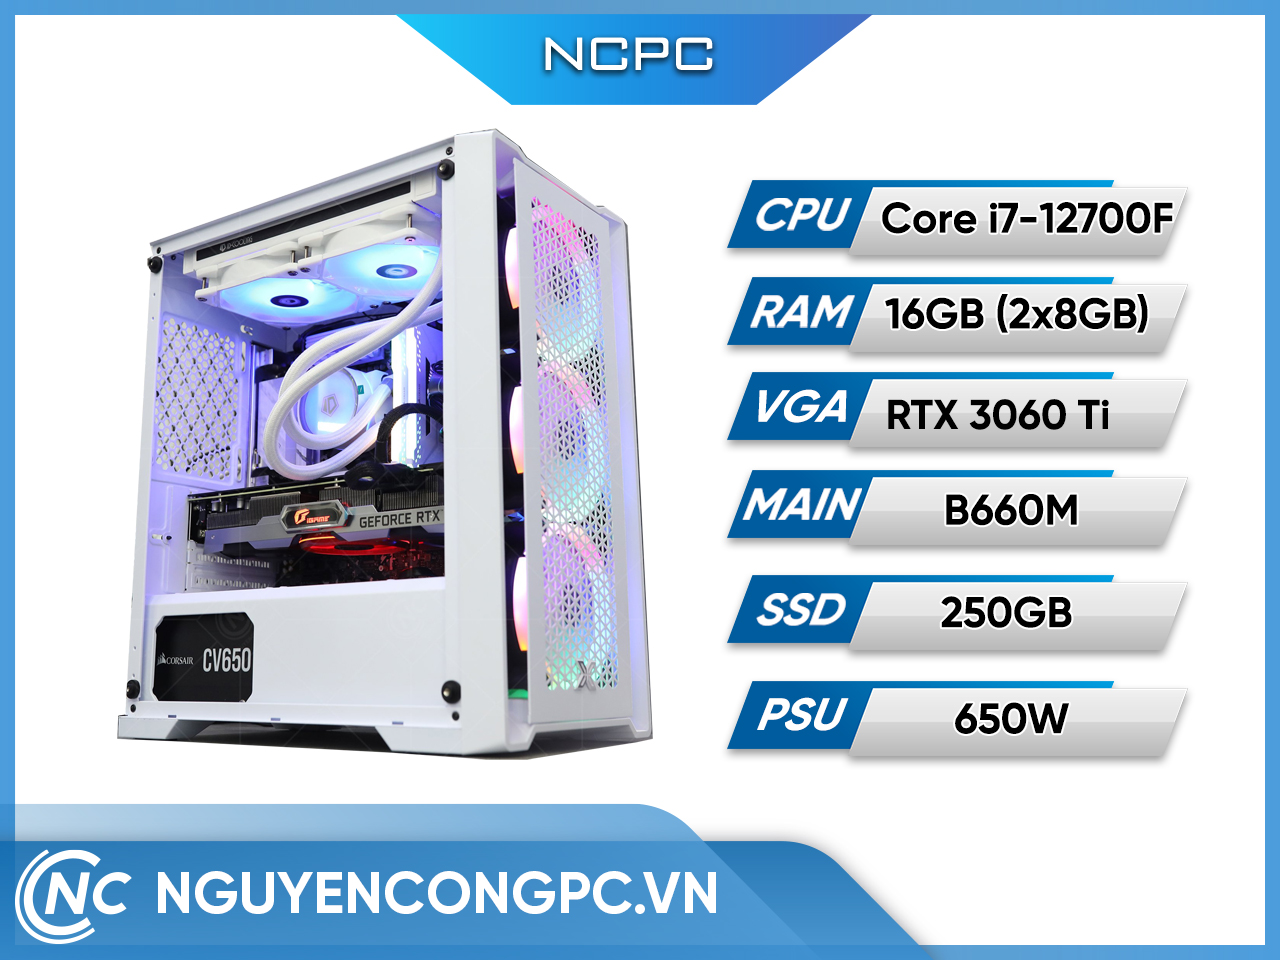 Bộ PC (Intel Core i7-12700F/ B660M/ 16GB RAM/ 250GB SSD/ RTX 3060 Ti/ 650W)